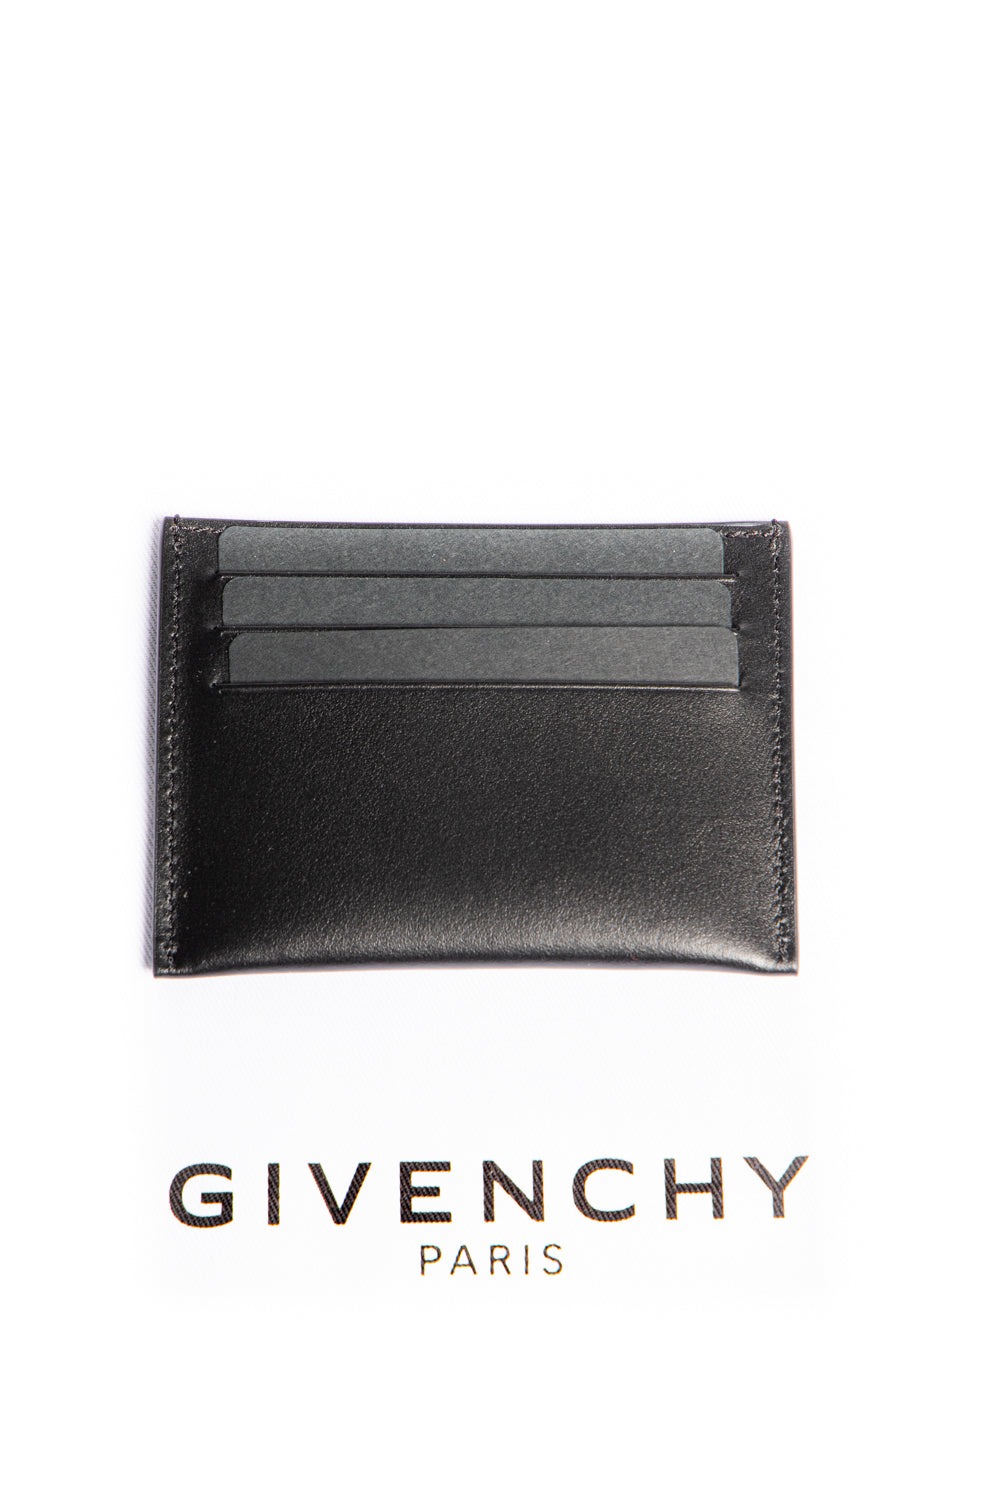 Givenchy Portacarte In Pelle vista retro